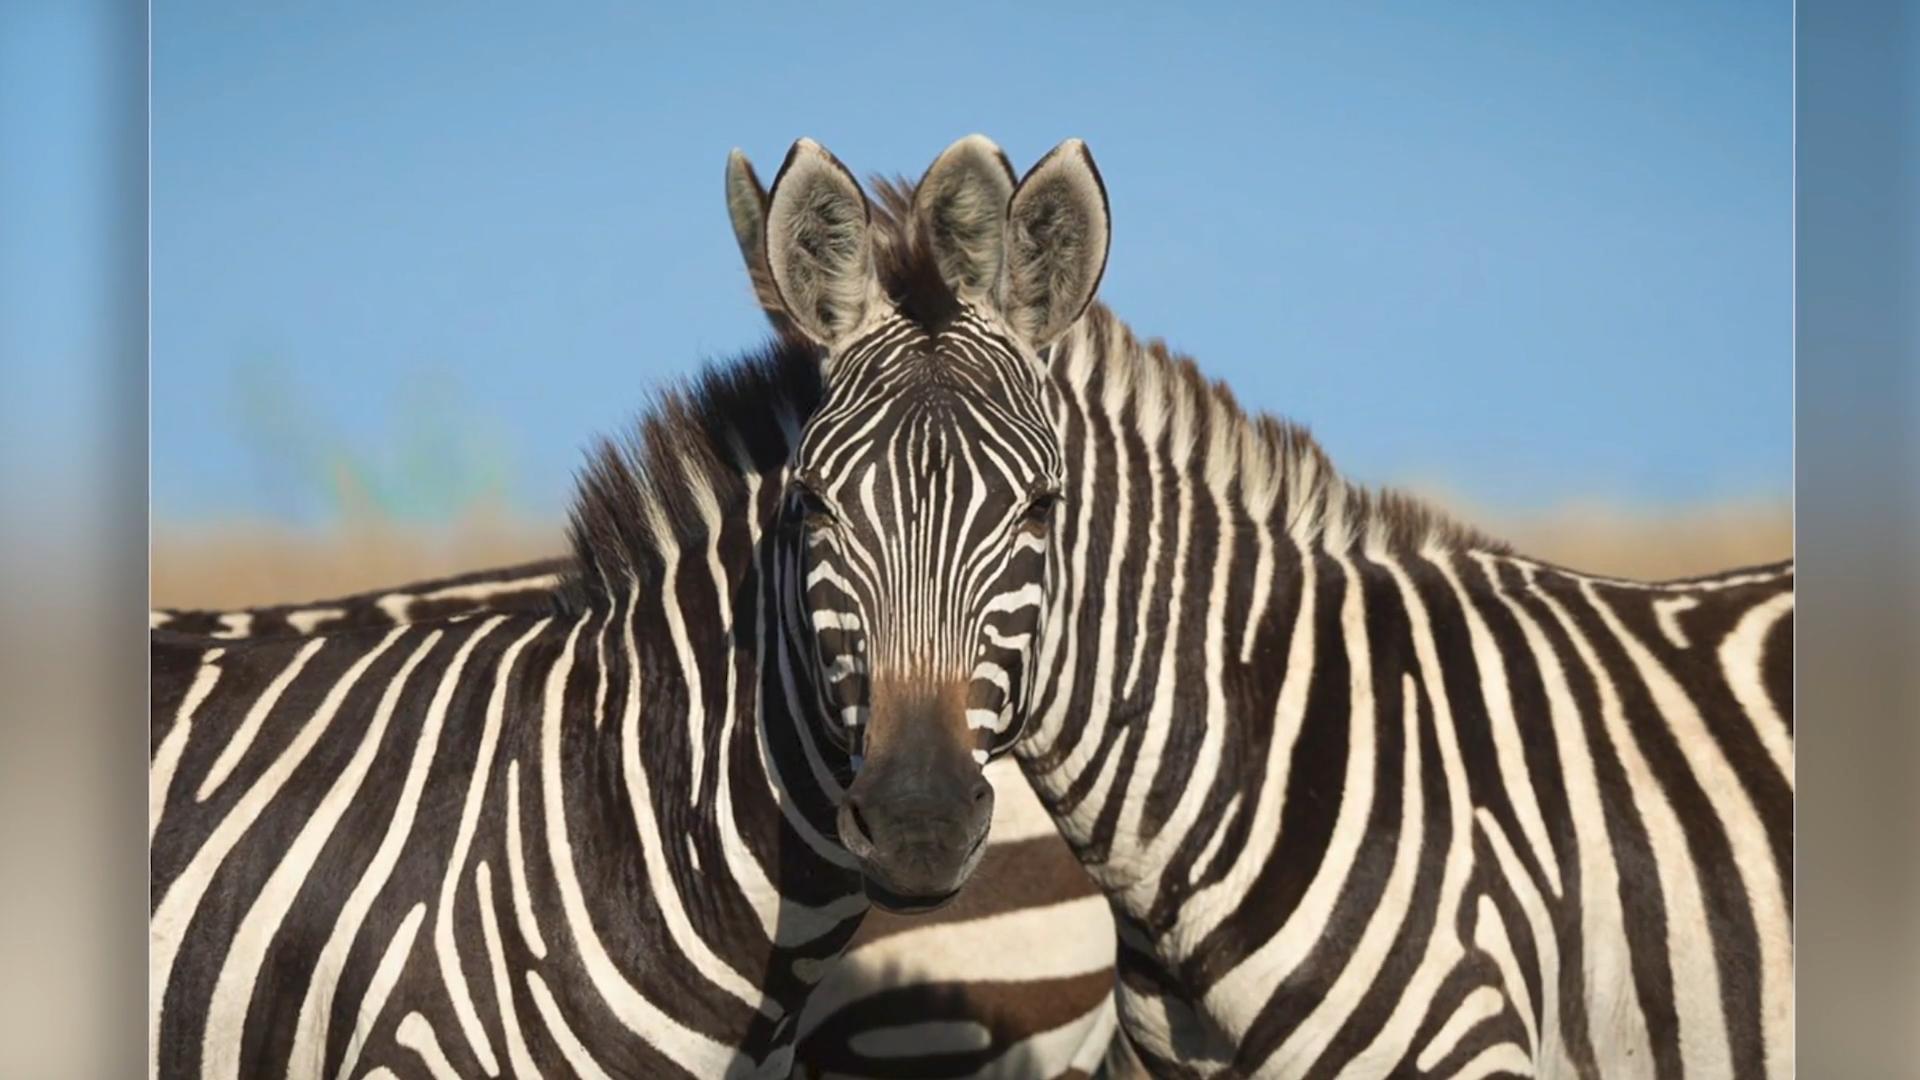 Quale zebra è davanti - sinistra o destra?  Illusioni ottiche